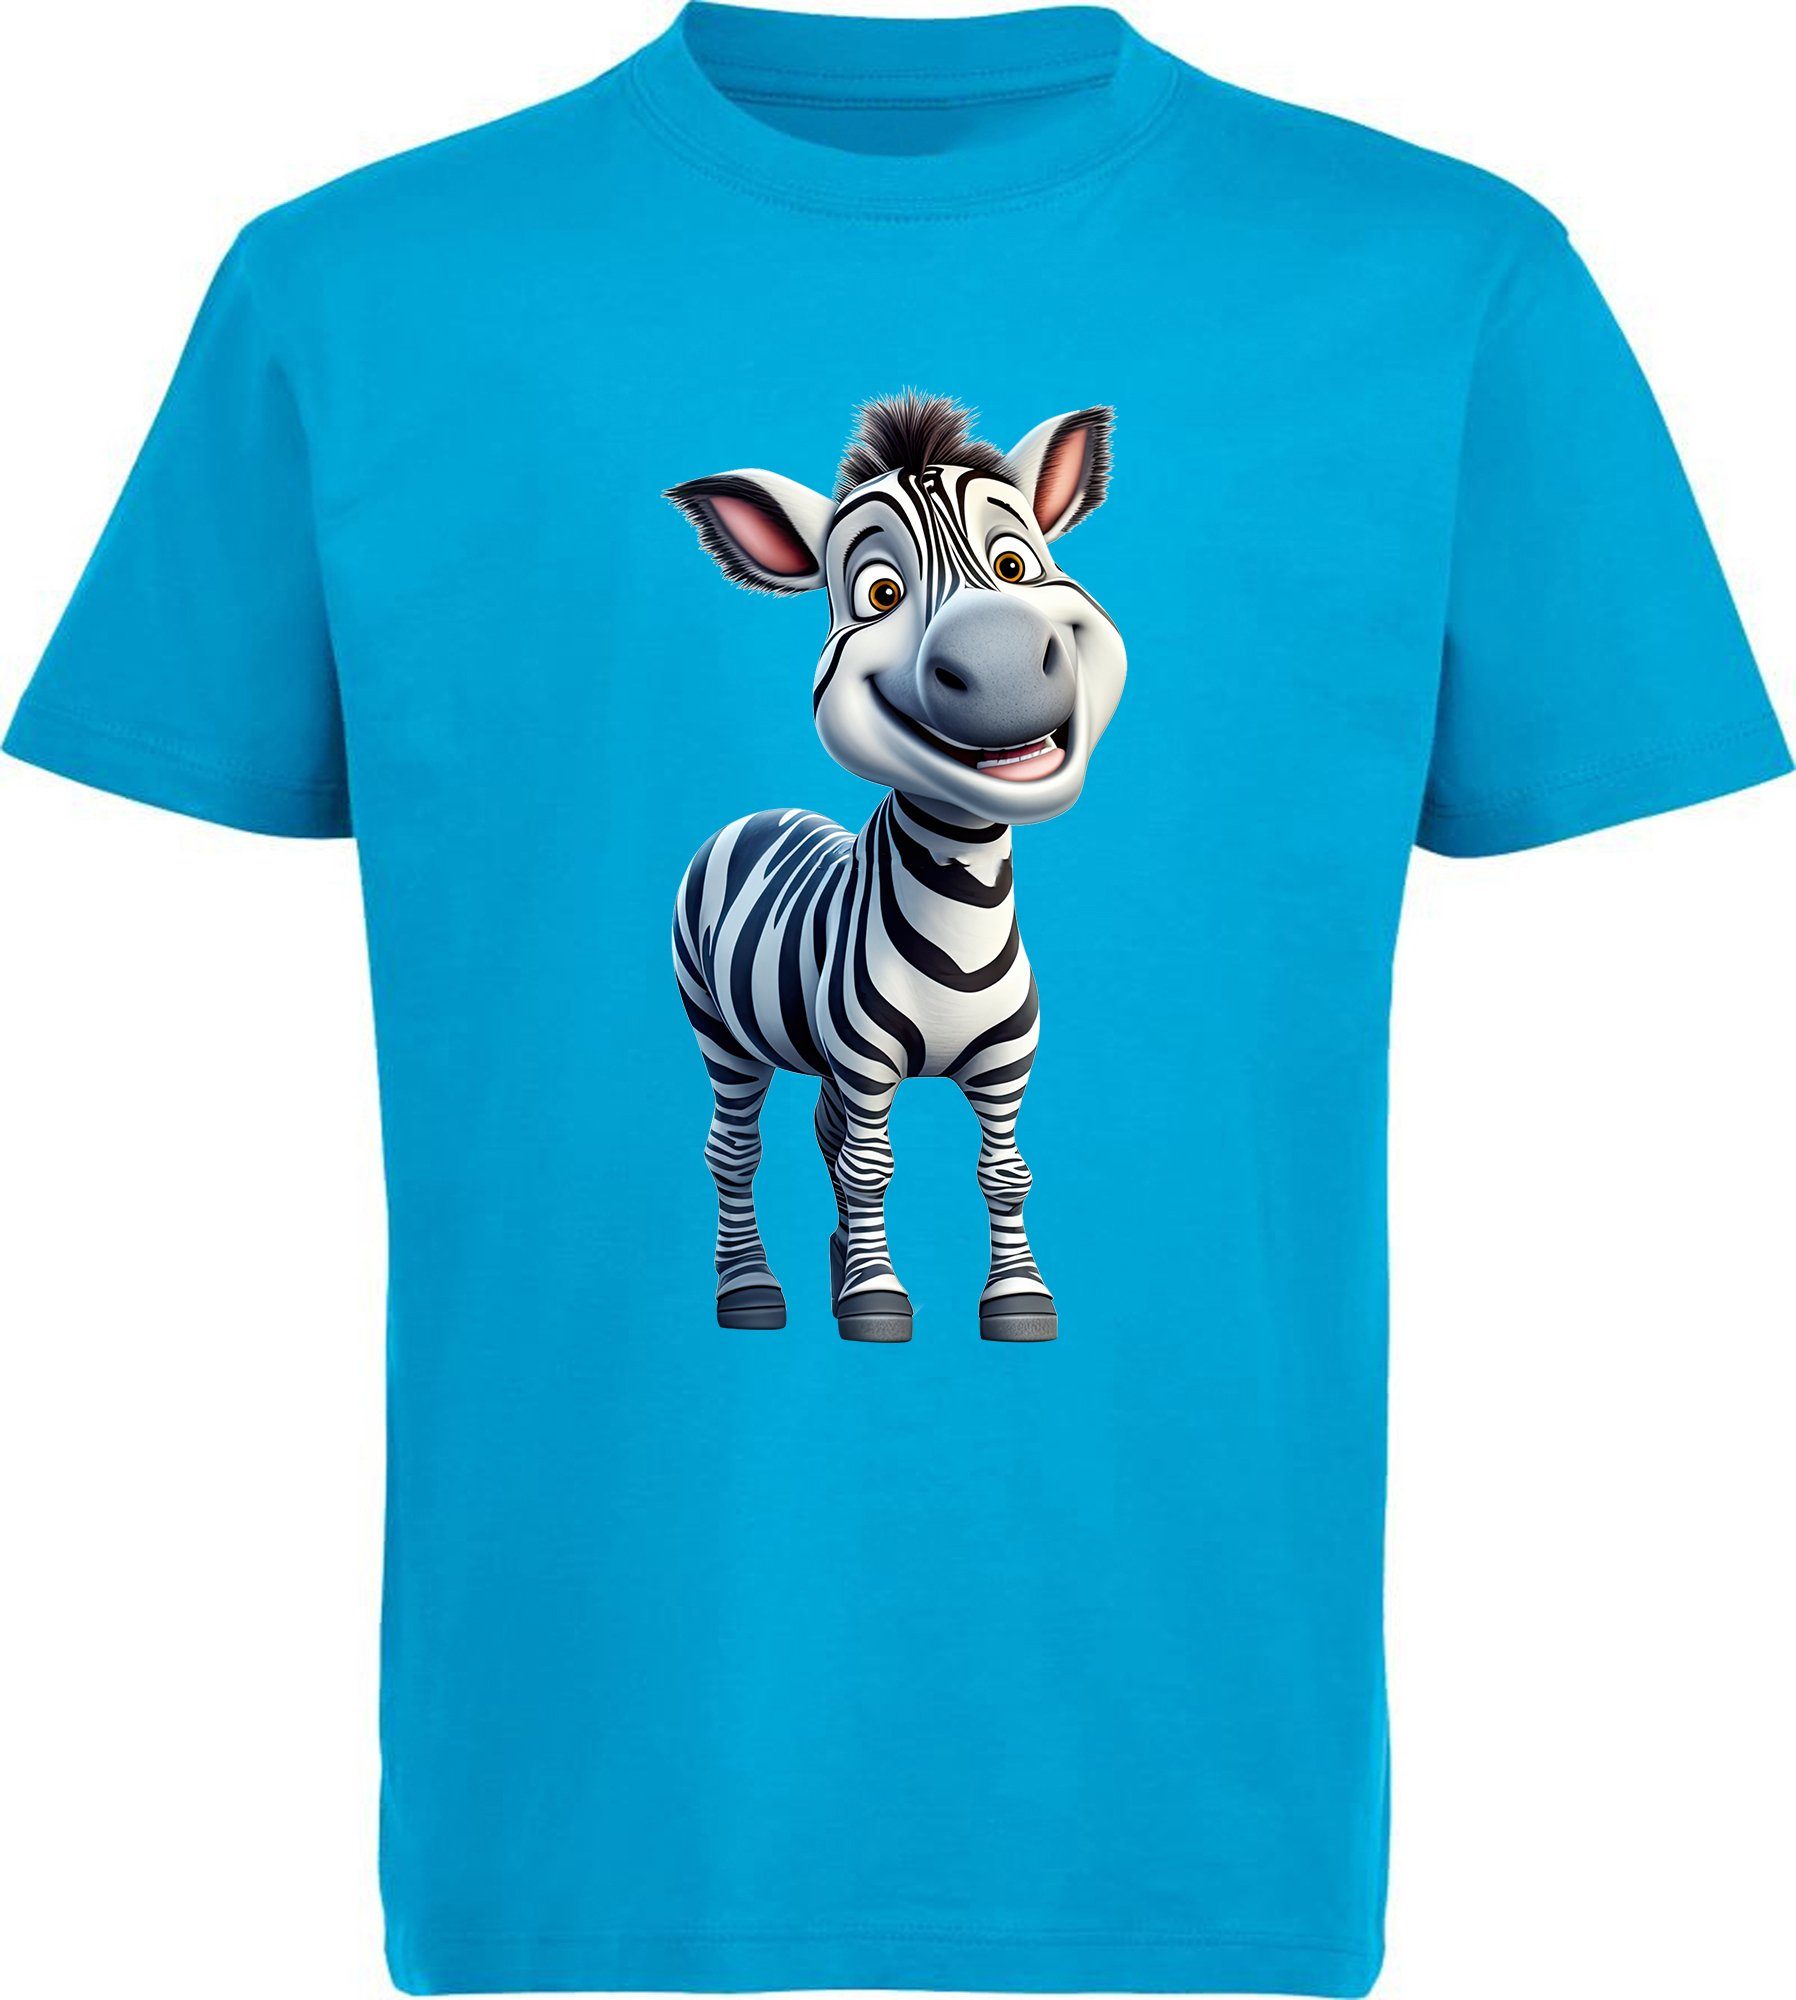 MyDesign24 T-Shirt Kinder Wildtier Print Shirt bedruckt - Baby Zebra Baumwollshirt mit Aufdruck, i280 aqua blau